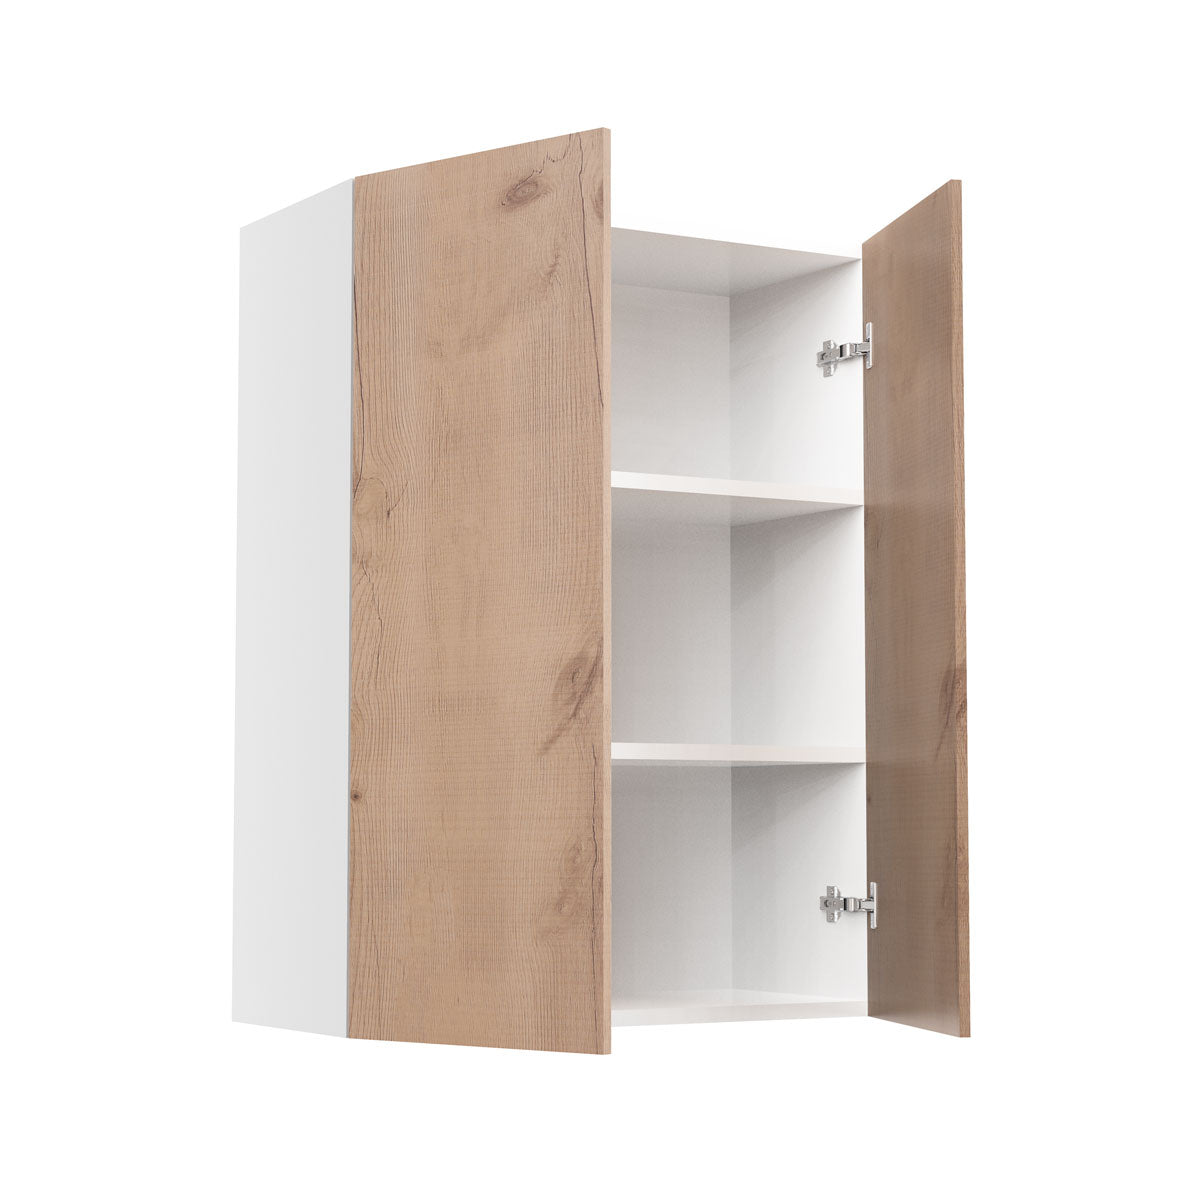 RTA - Rustic Oak - Double Door Wall Cabinets | 27"W x 36"H x 12"D